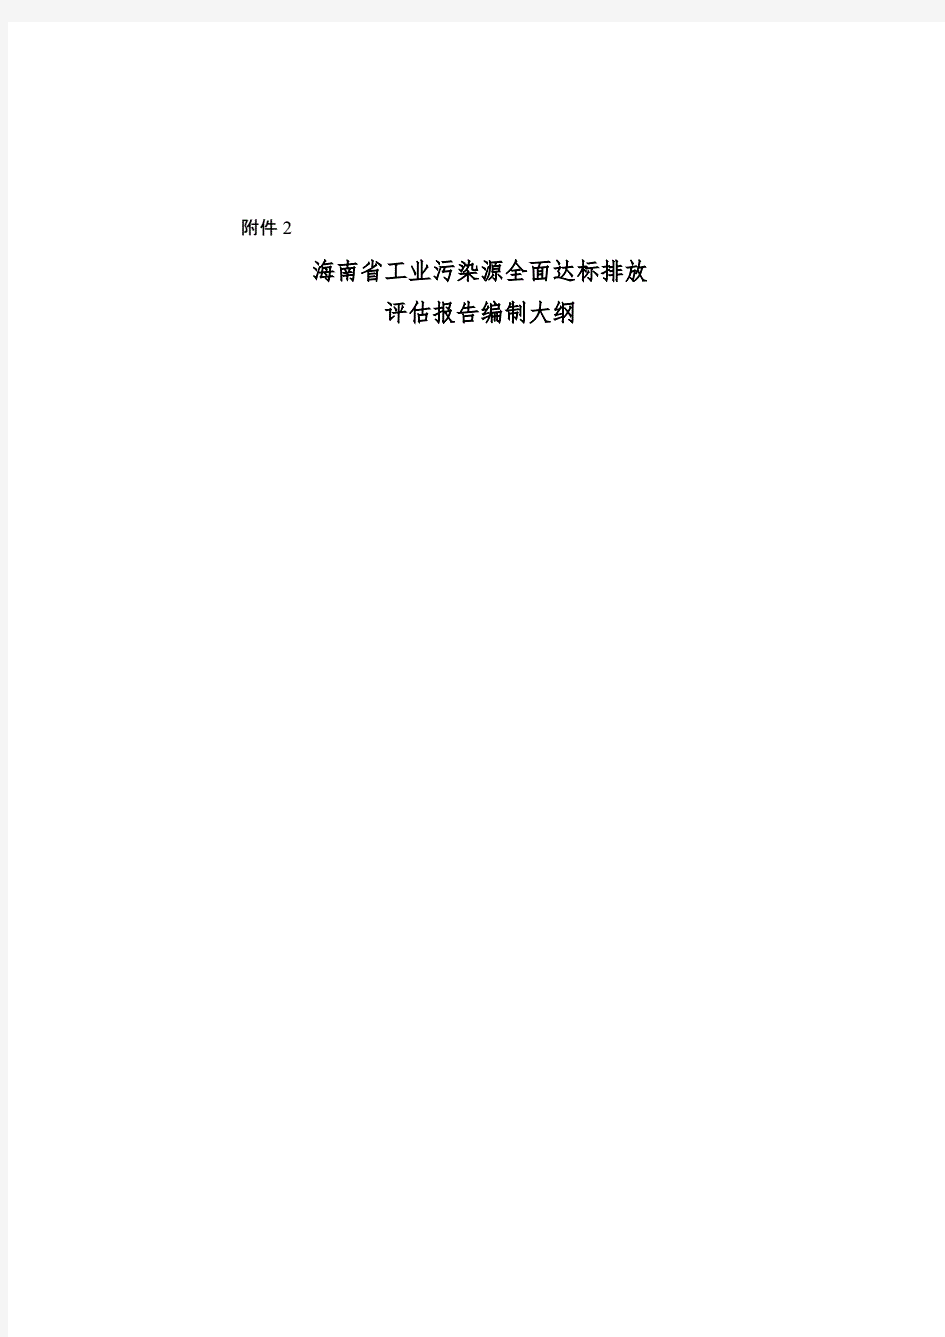 海南省工业污染源全面达标排放评估报告编制大纲